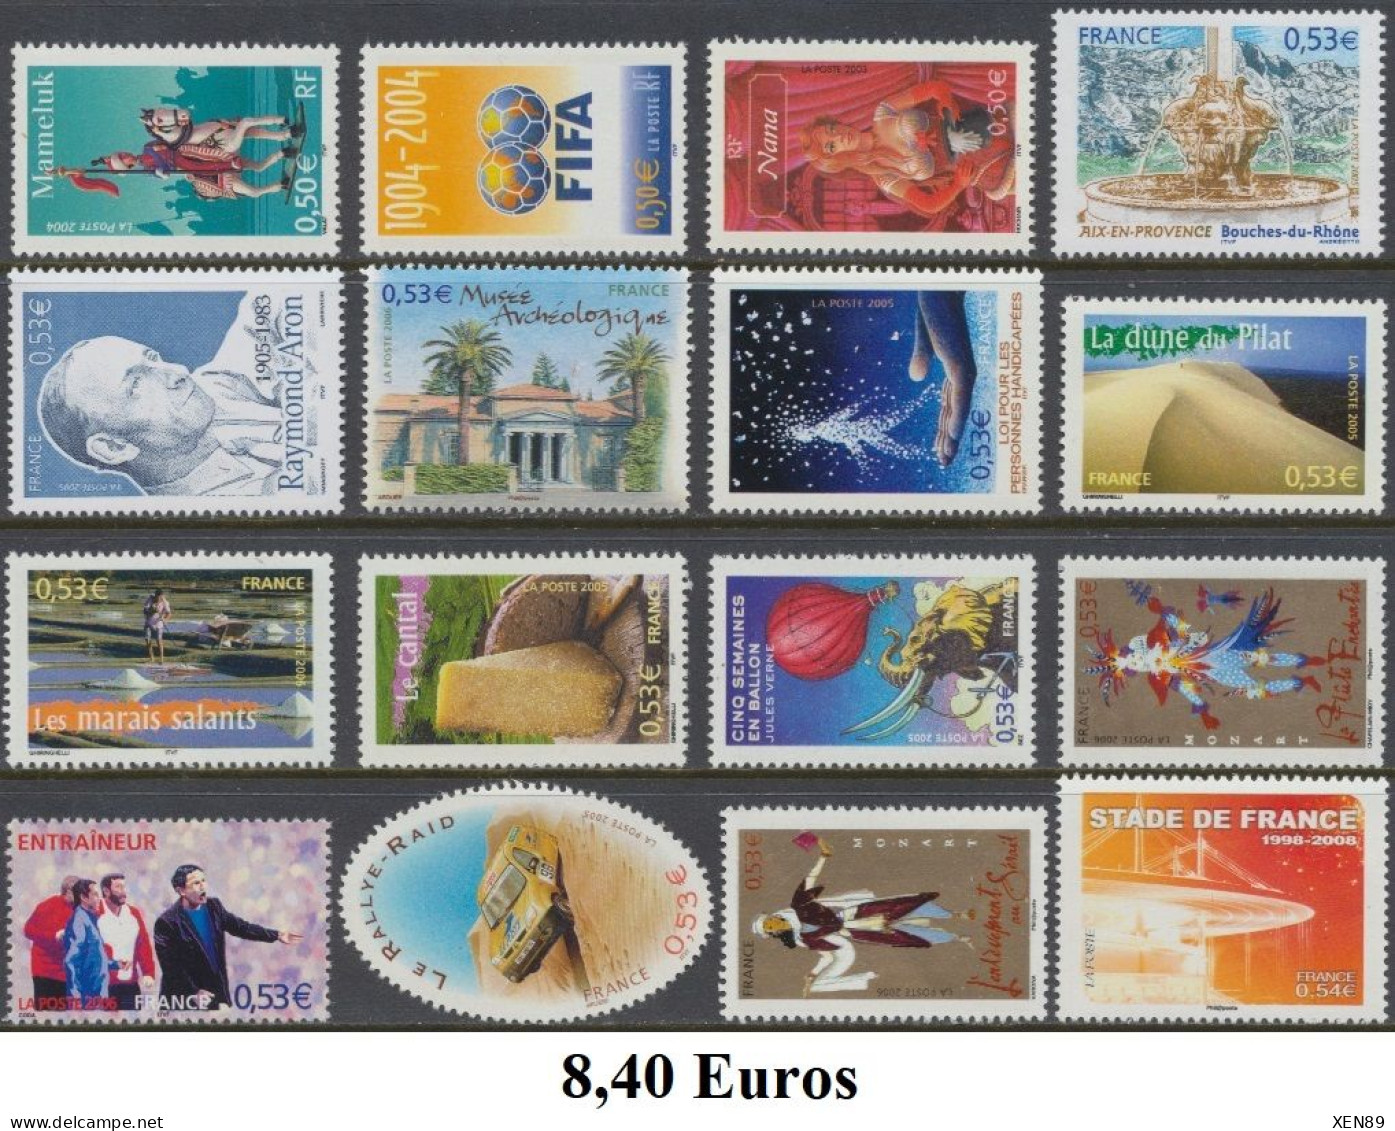 TIMBRES EUROS - ANNÉES 1999 A 2014 - DÉFAUTS -- Explications Ci-dessous - REMISE 30 % -- - Collections